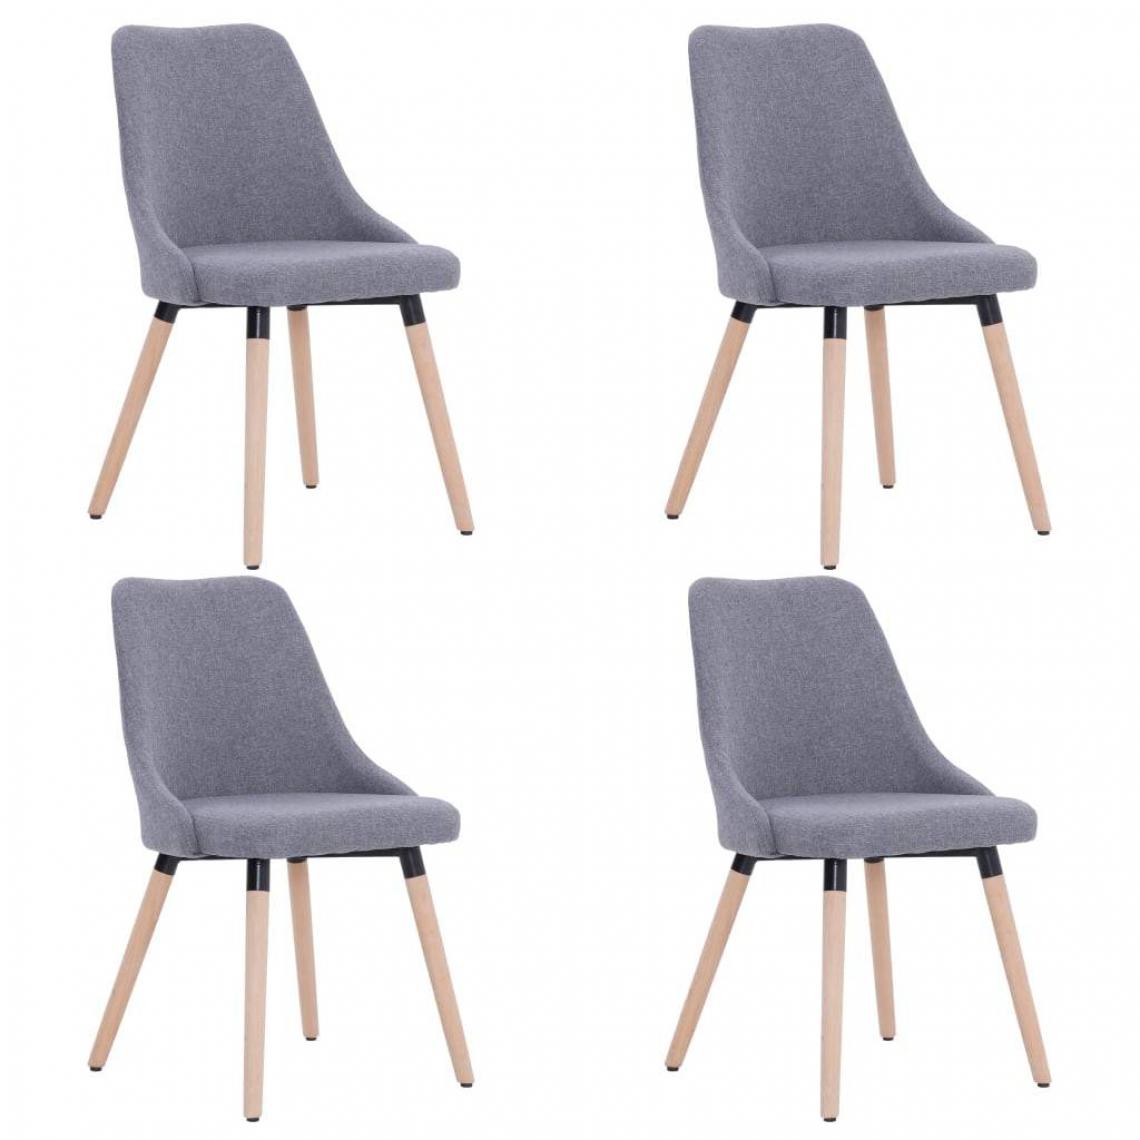 Decoshop26 - Lot de 4 chaises de salle à manger cuisine design classique tissu gris clair CDS021518 - Chaises